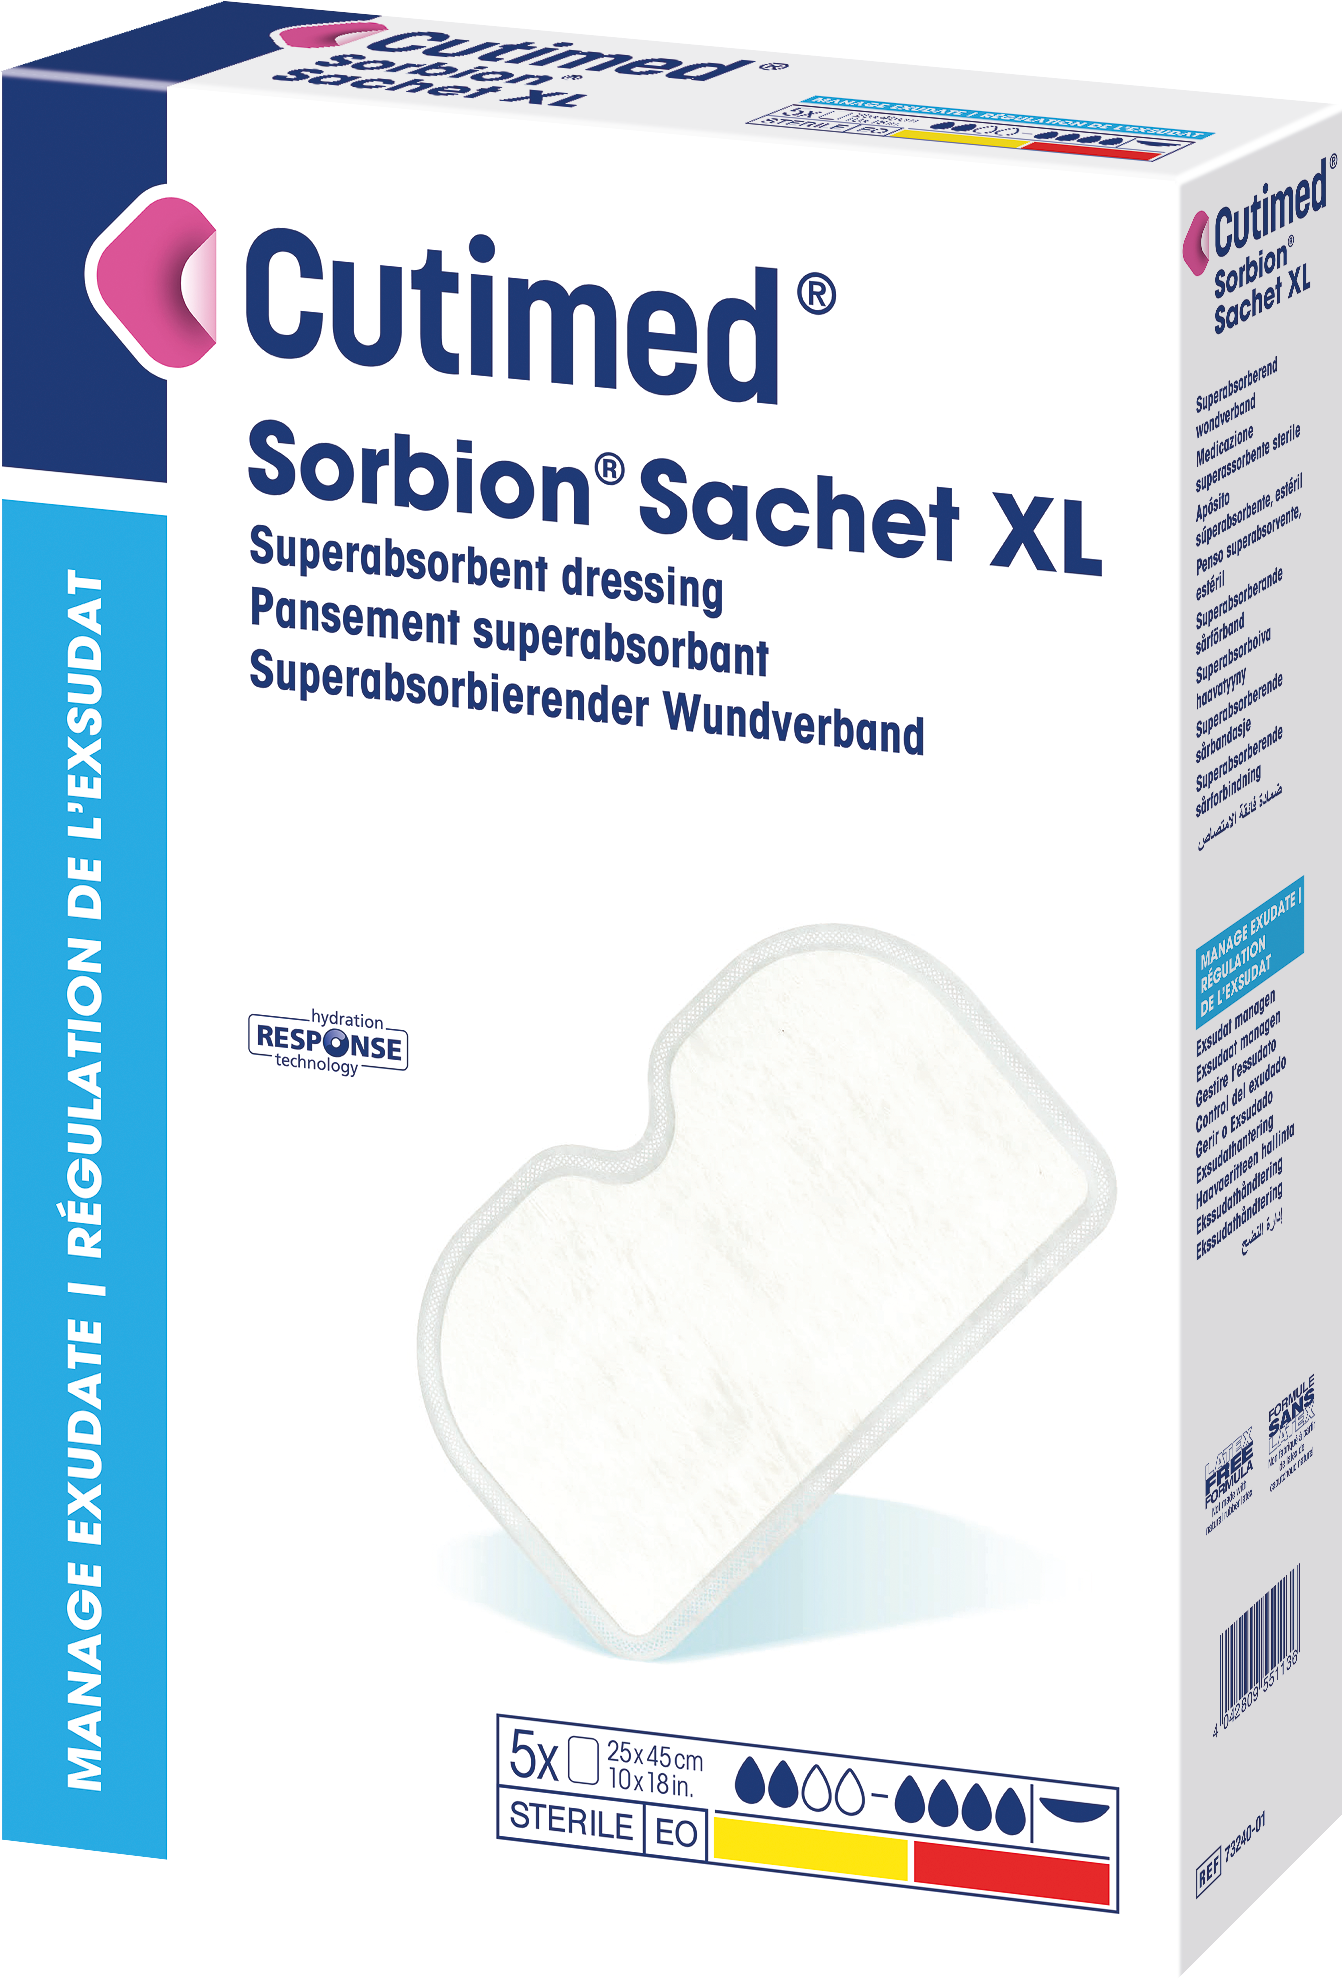 Bilde som viser et pakningsbilde av Cutimed® Sorbion® Sachet XL